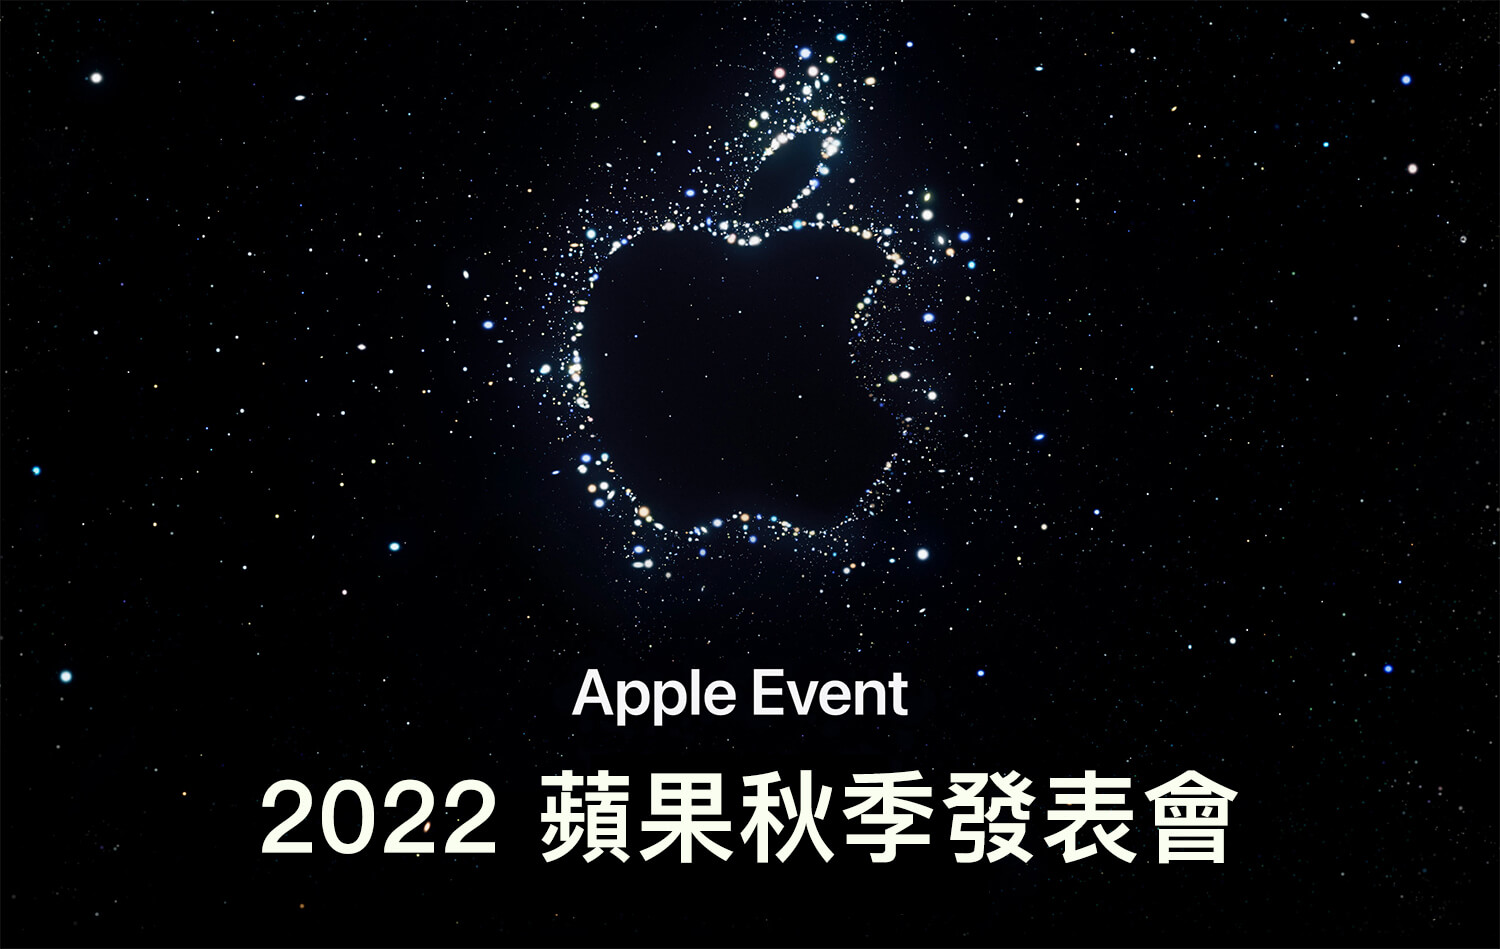 2022 蘋果發表會將於台灣時間 9/8 凌晨發表 iPhone 14、Apple Watch 8 及更多產品